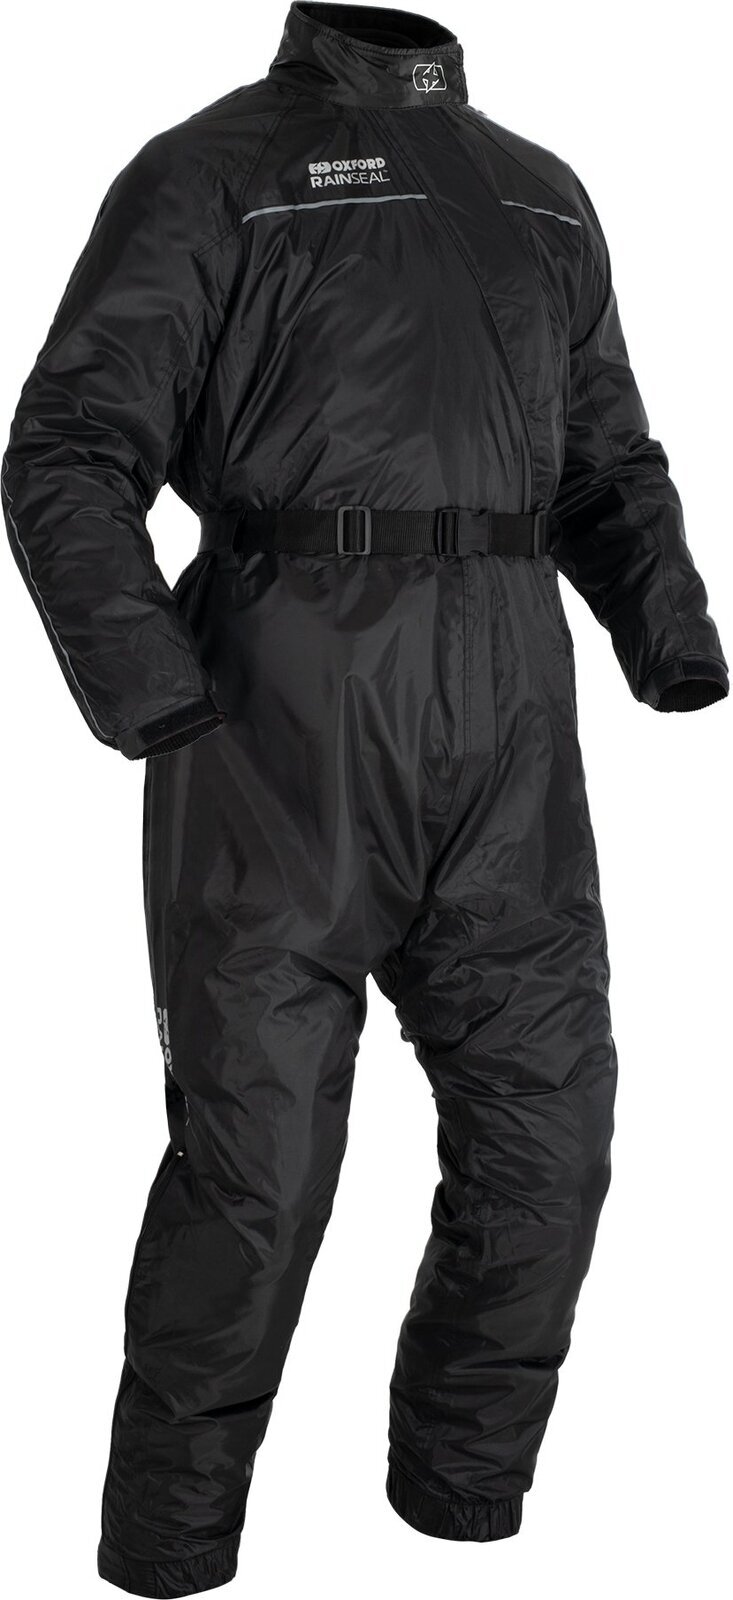 Motocyklowa przeciwdeszczowa odzież Oxford Rainseal Oversuit Black XL